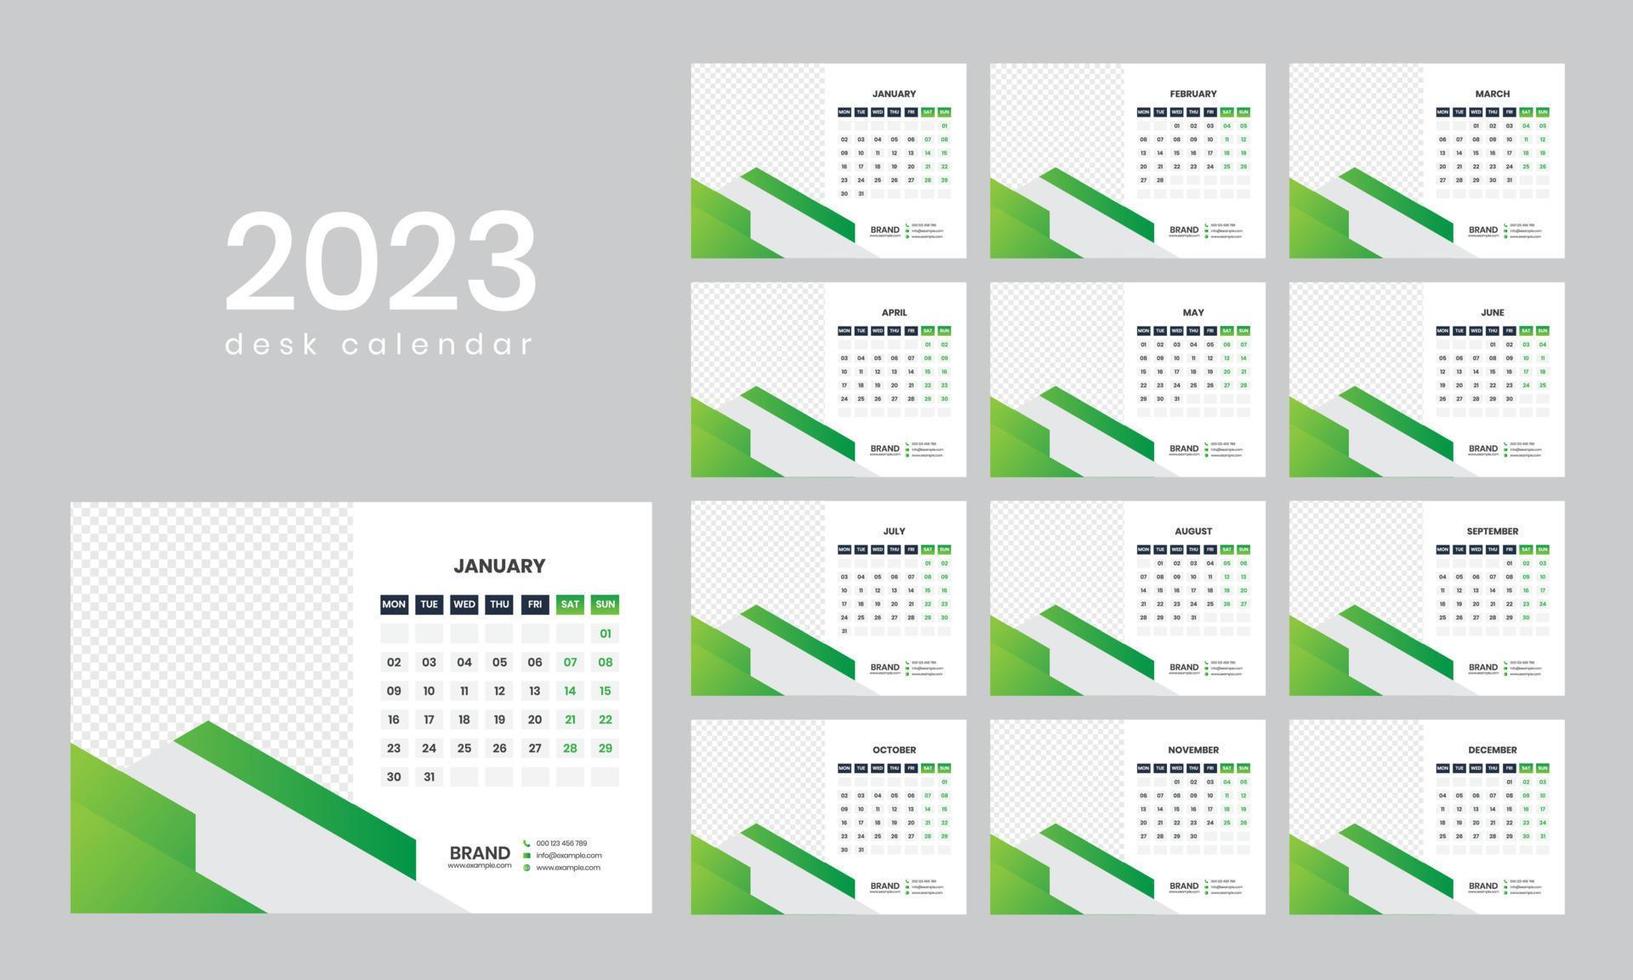 Tischkalender 2023 vektor